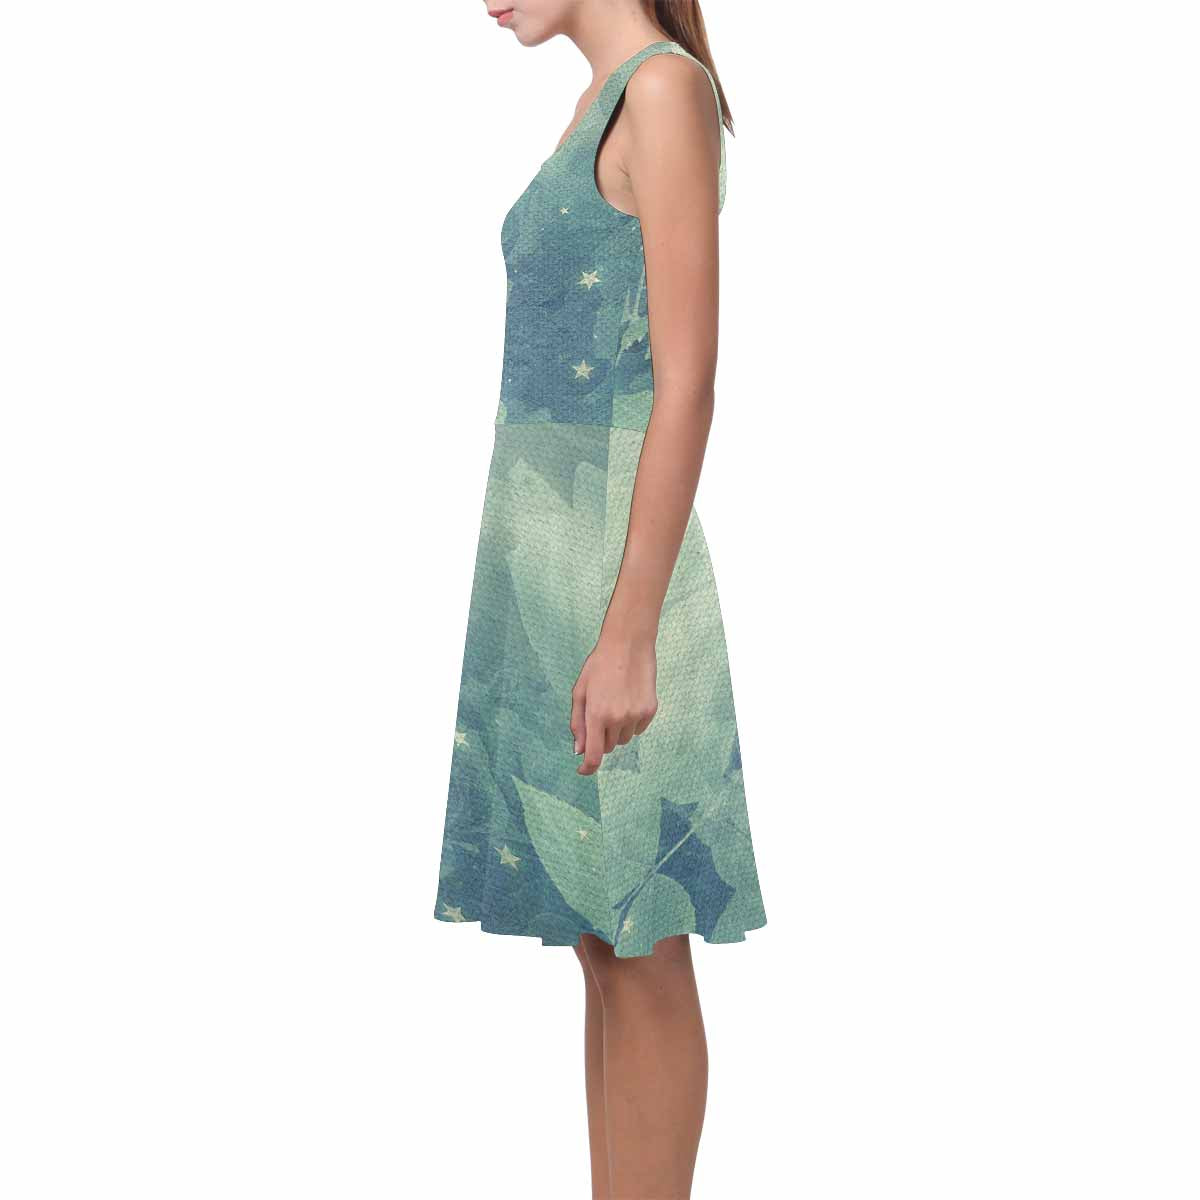 Antique General summer dress, MODEL 09534, design 53